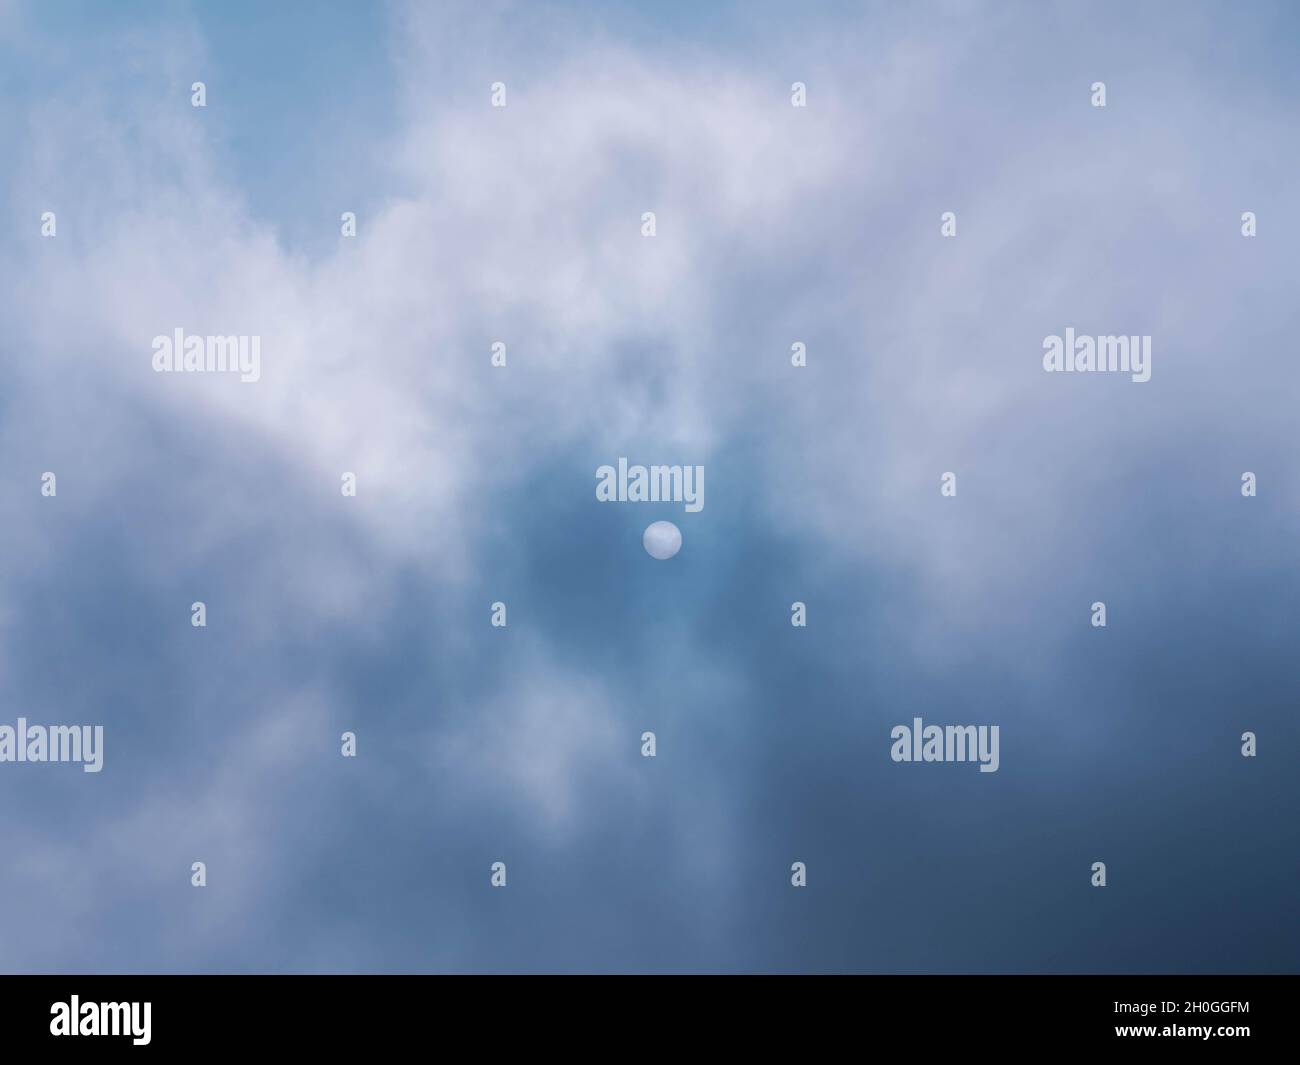 Stark aufsteigender Nebel, der das Sonnenlicht unterdrückt. Auf der Oberfläche der Sonne sind unten zwei Punkte zu sehen. Stockfoto